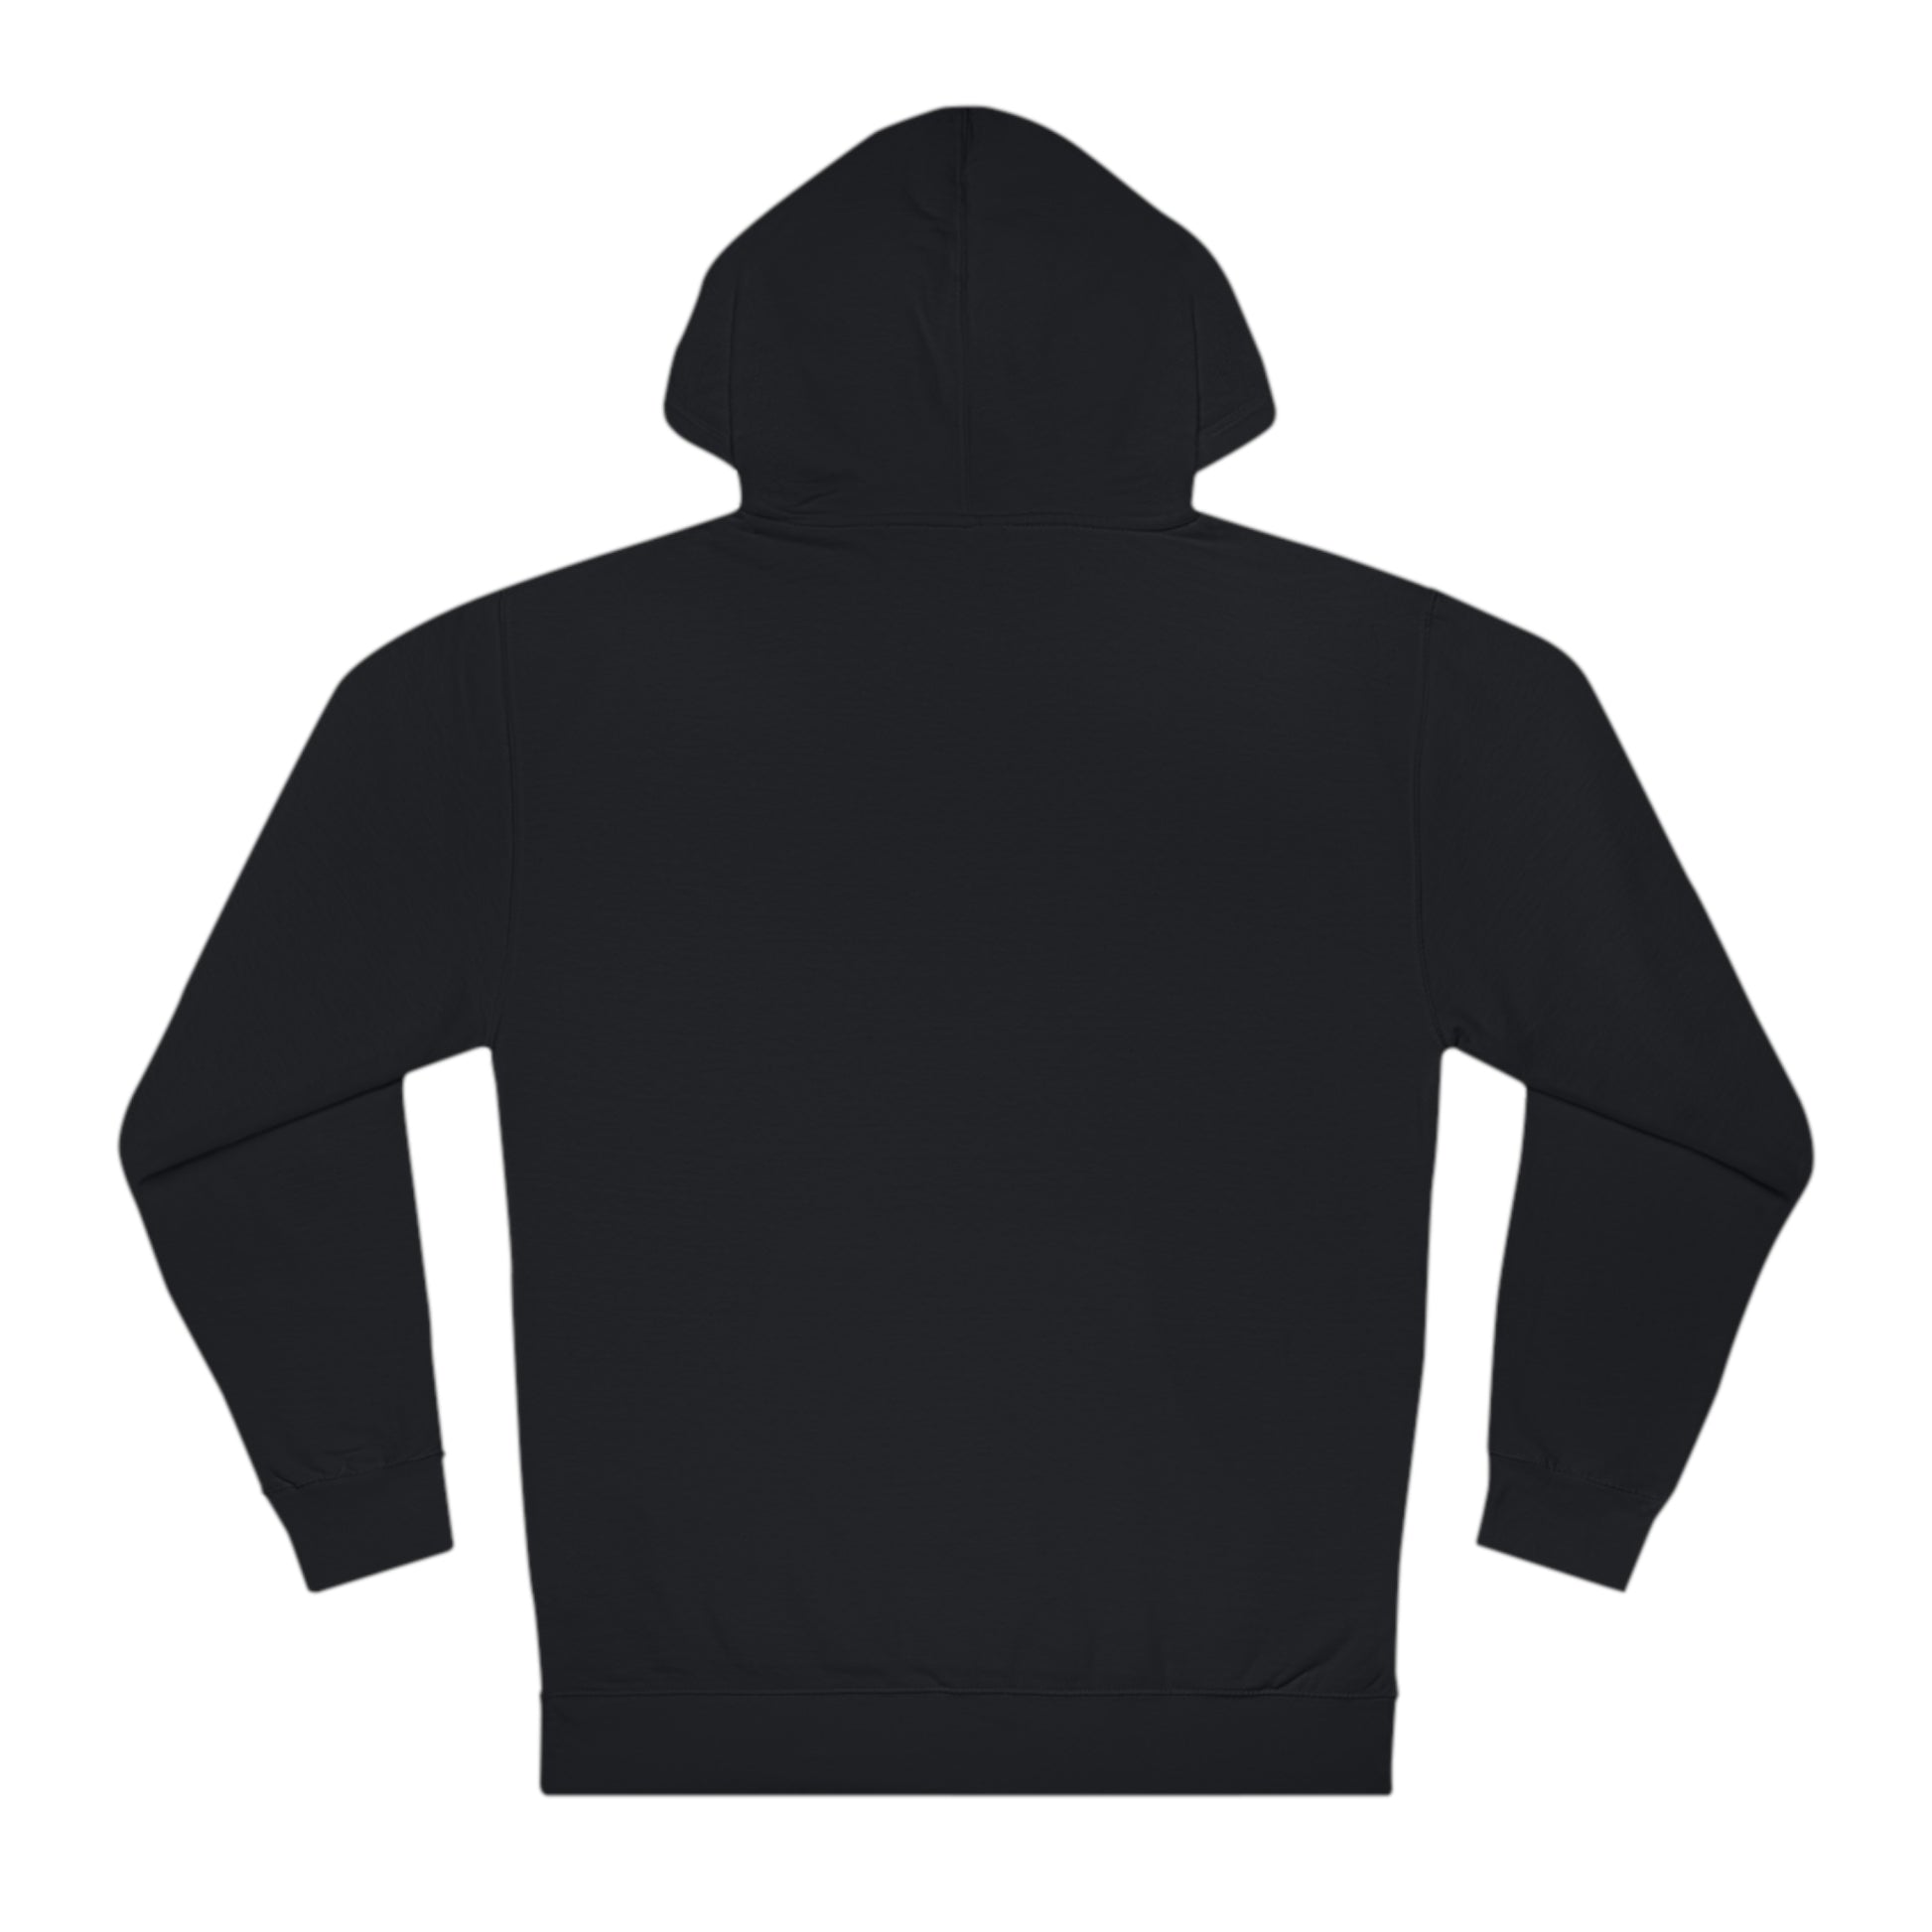 Unisex hooded sweatshirt hoodie in black